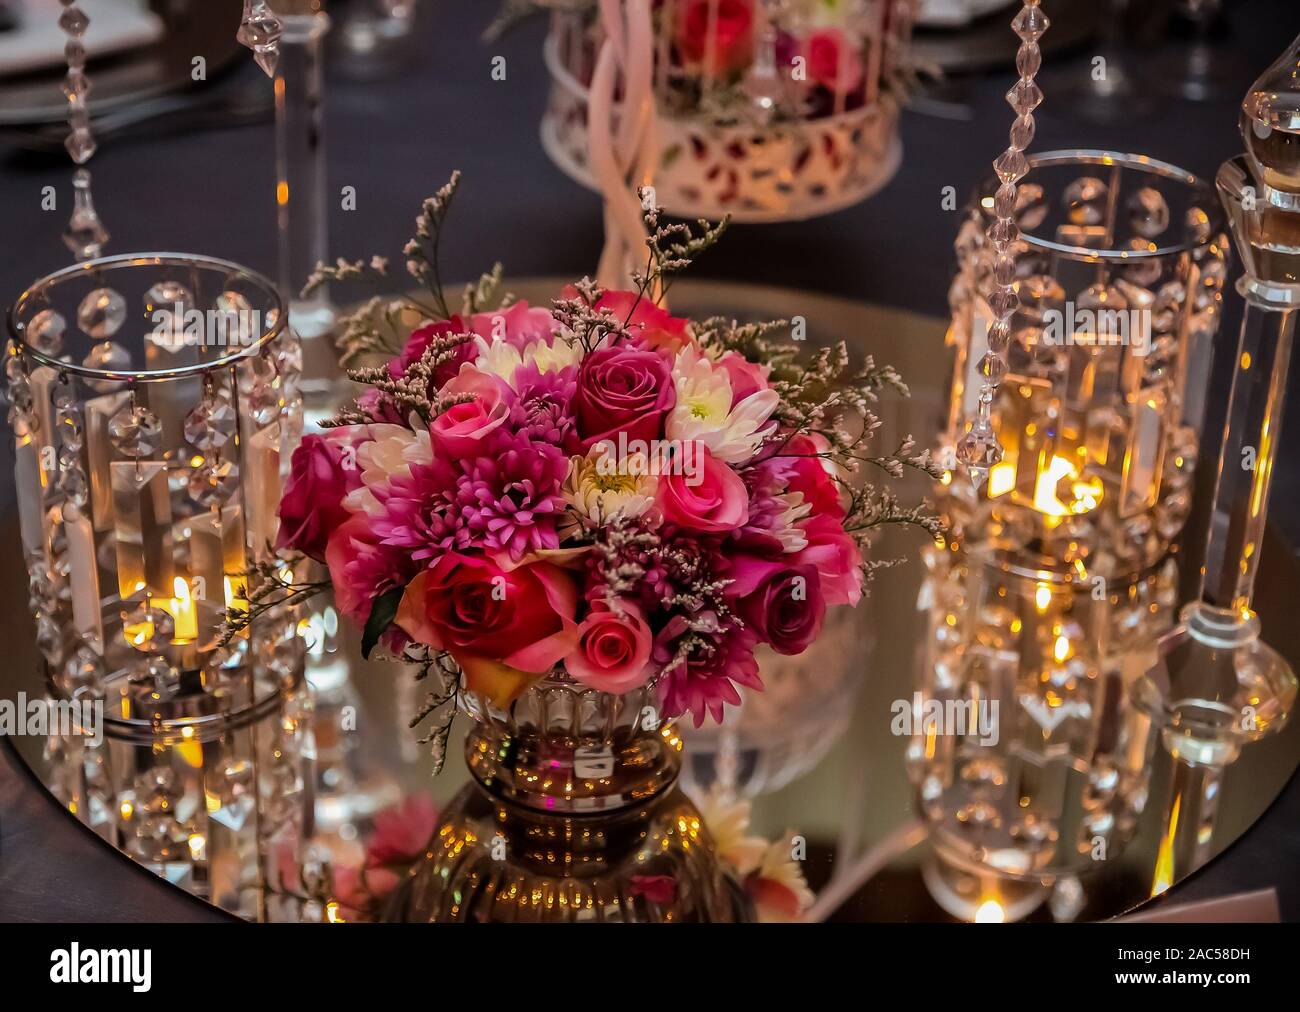 Des fleurs et des bougies pour l'hôtellerie et de l'entreprise à des fins de décoration Gala de Noël Partie Banque D'Images